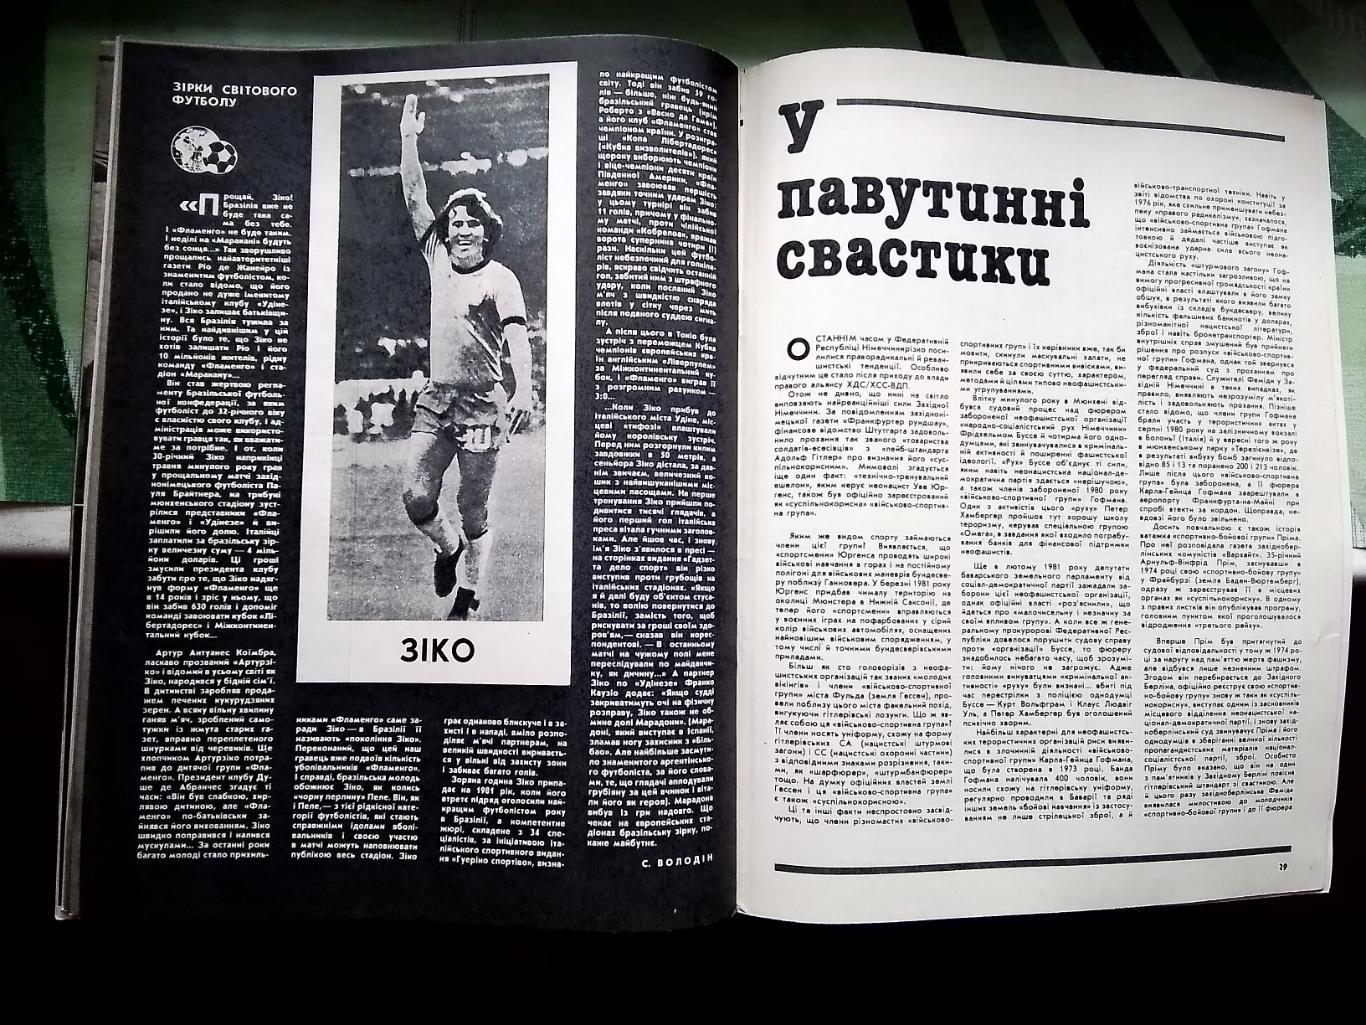 Журнал Старт Украина 1984 N 2 Сокол Киев Обзор I лиги Зико 6